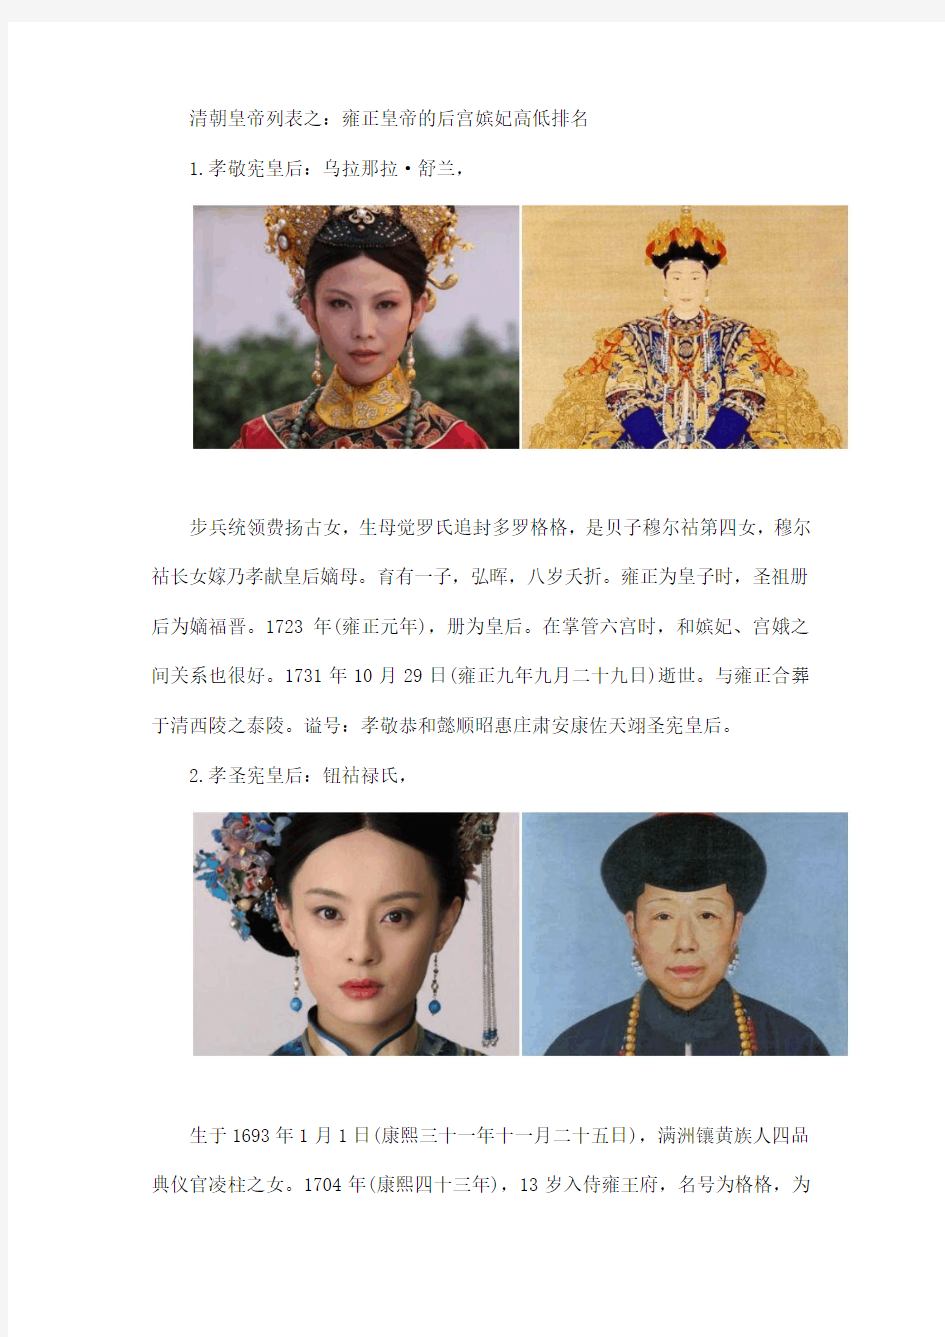 雍正皇帝的后宫嫔妃高低排名